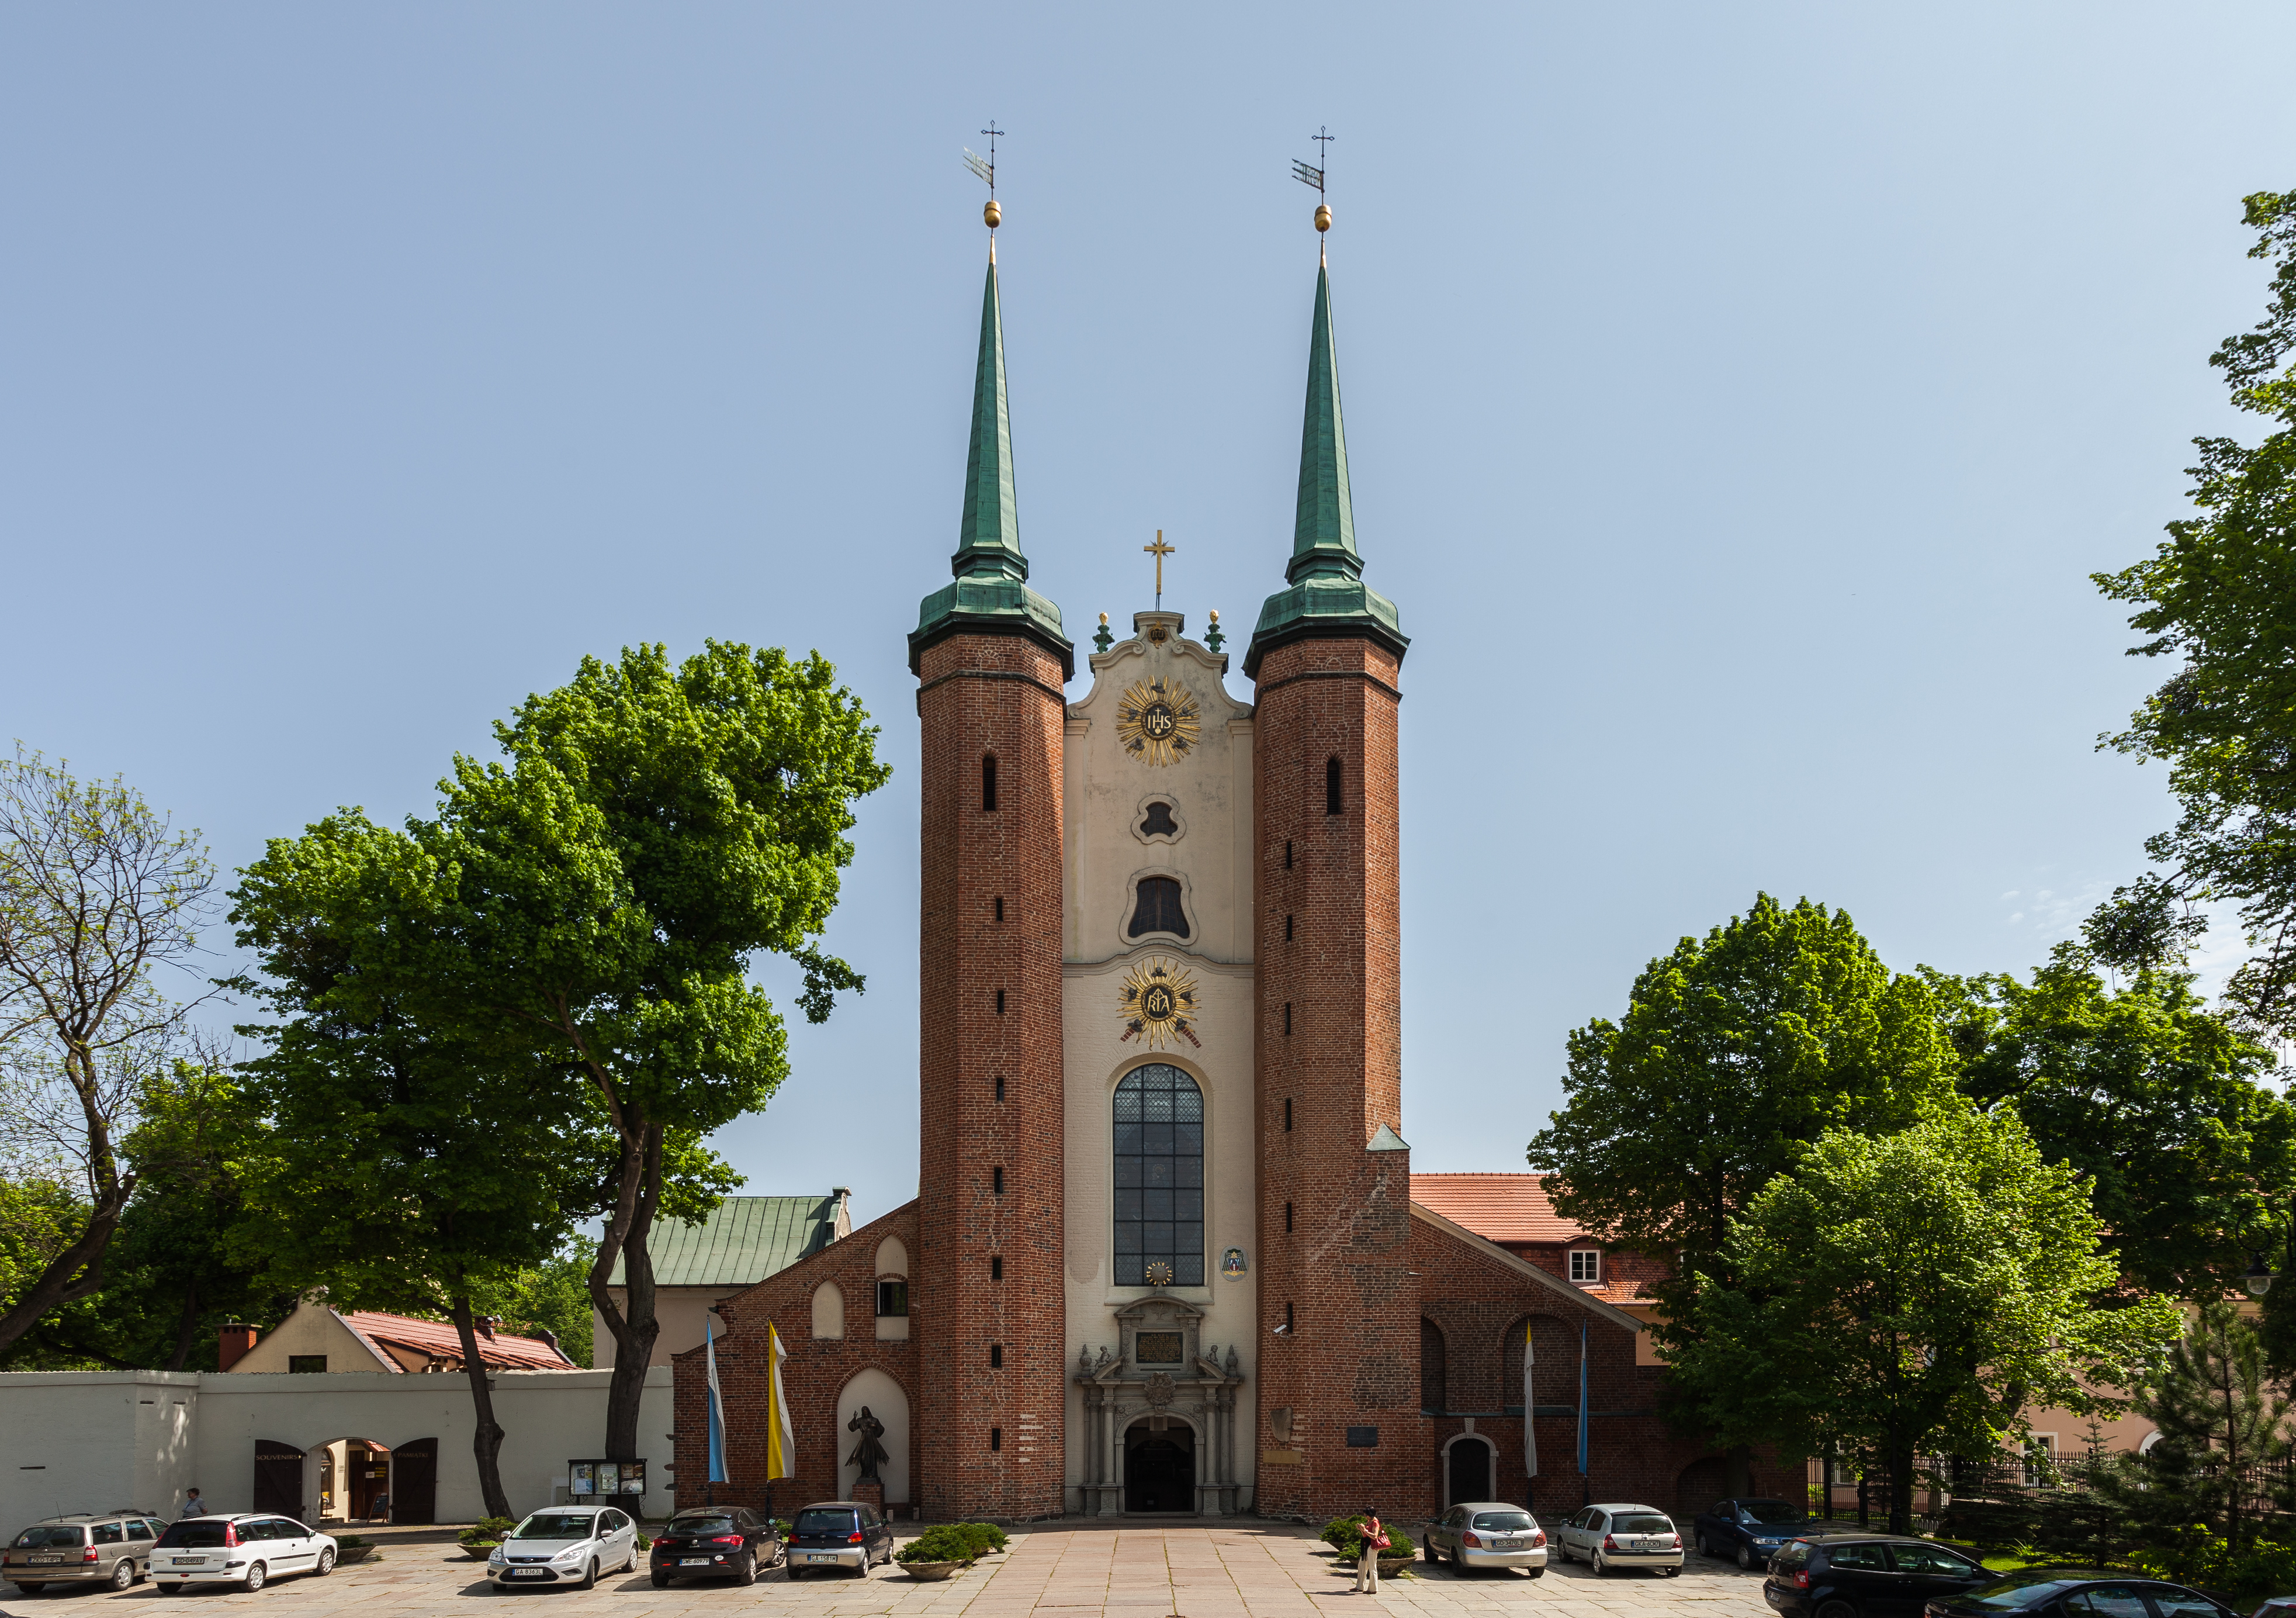 Catedral de Oliwa, Gdansk, Polonia, 2013-05-21, DD 16